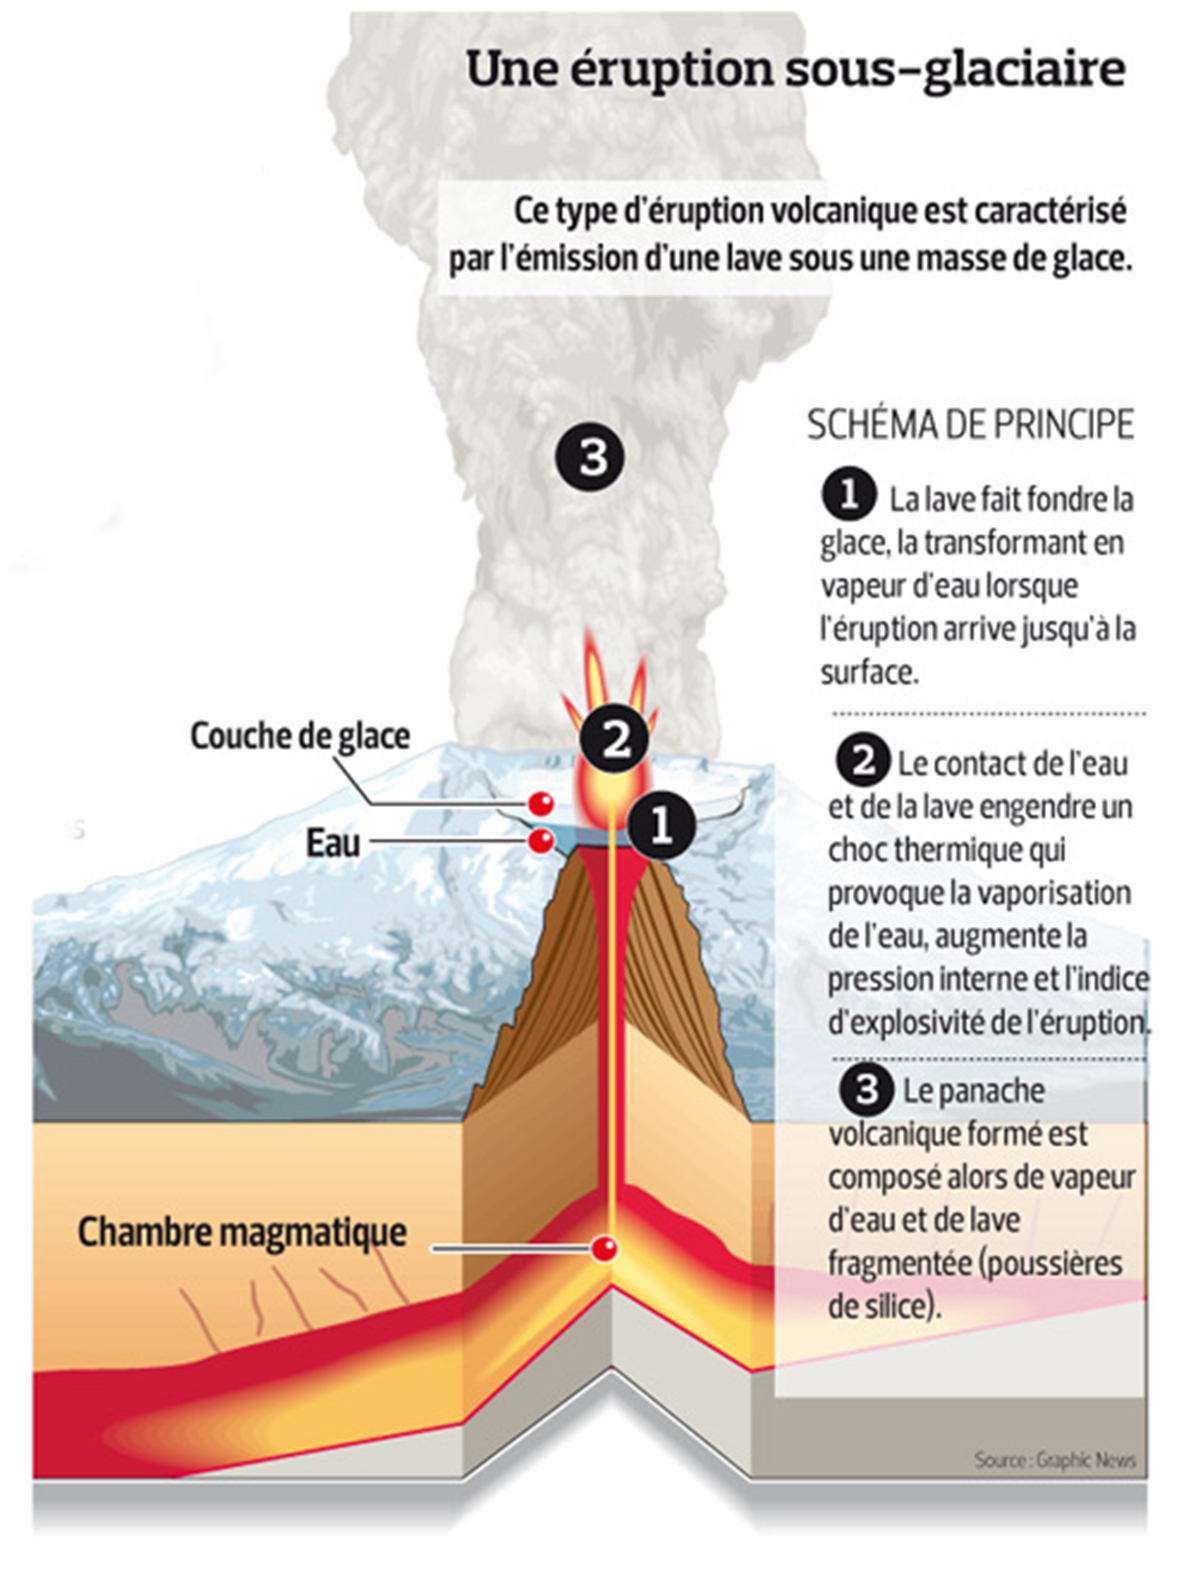 Eruption sous-glaciaire